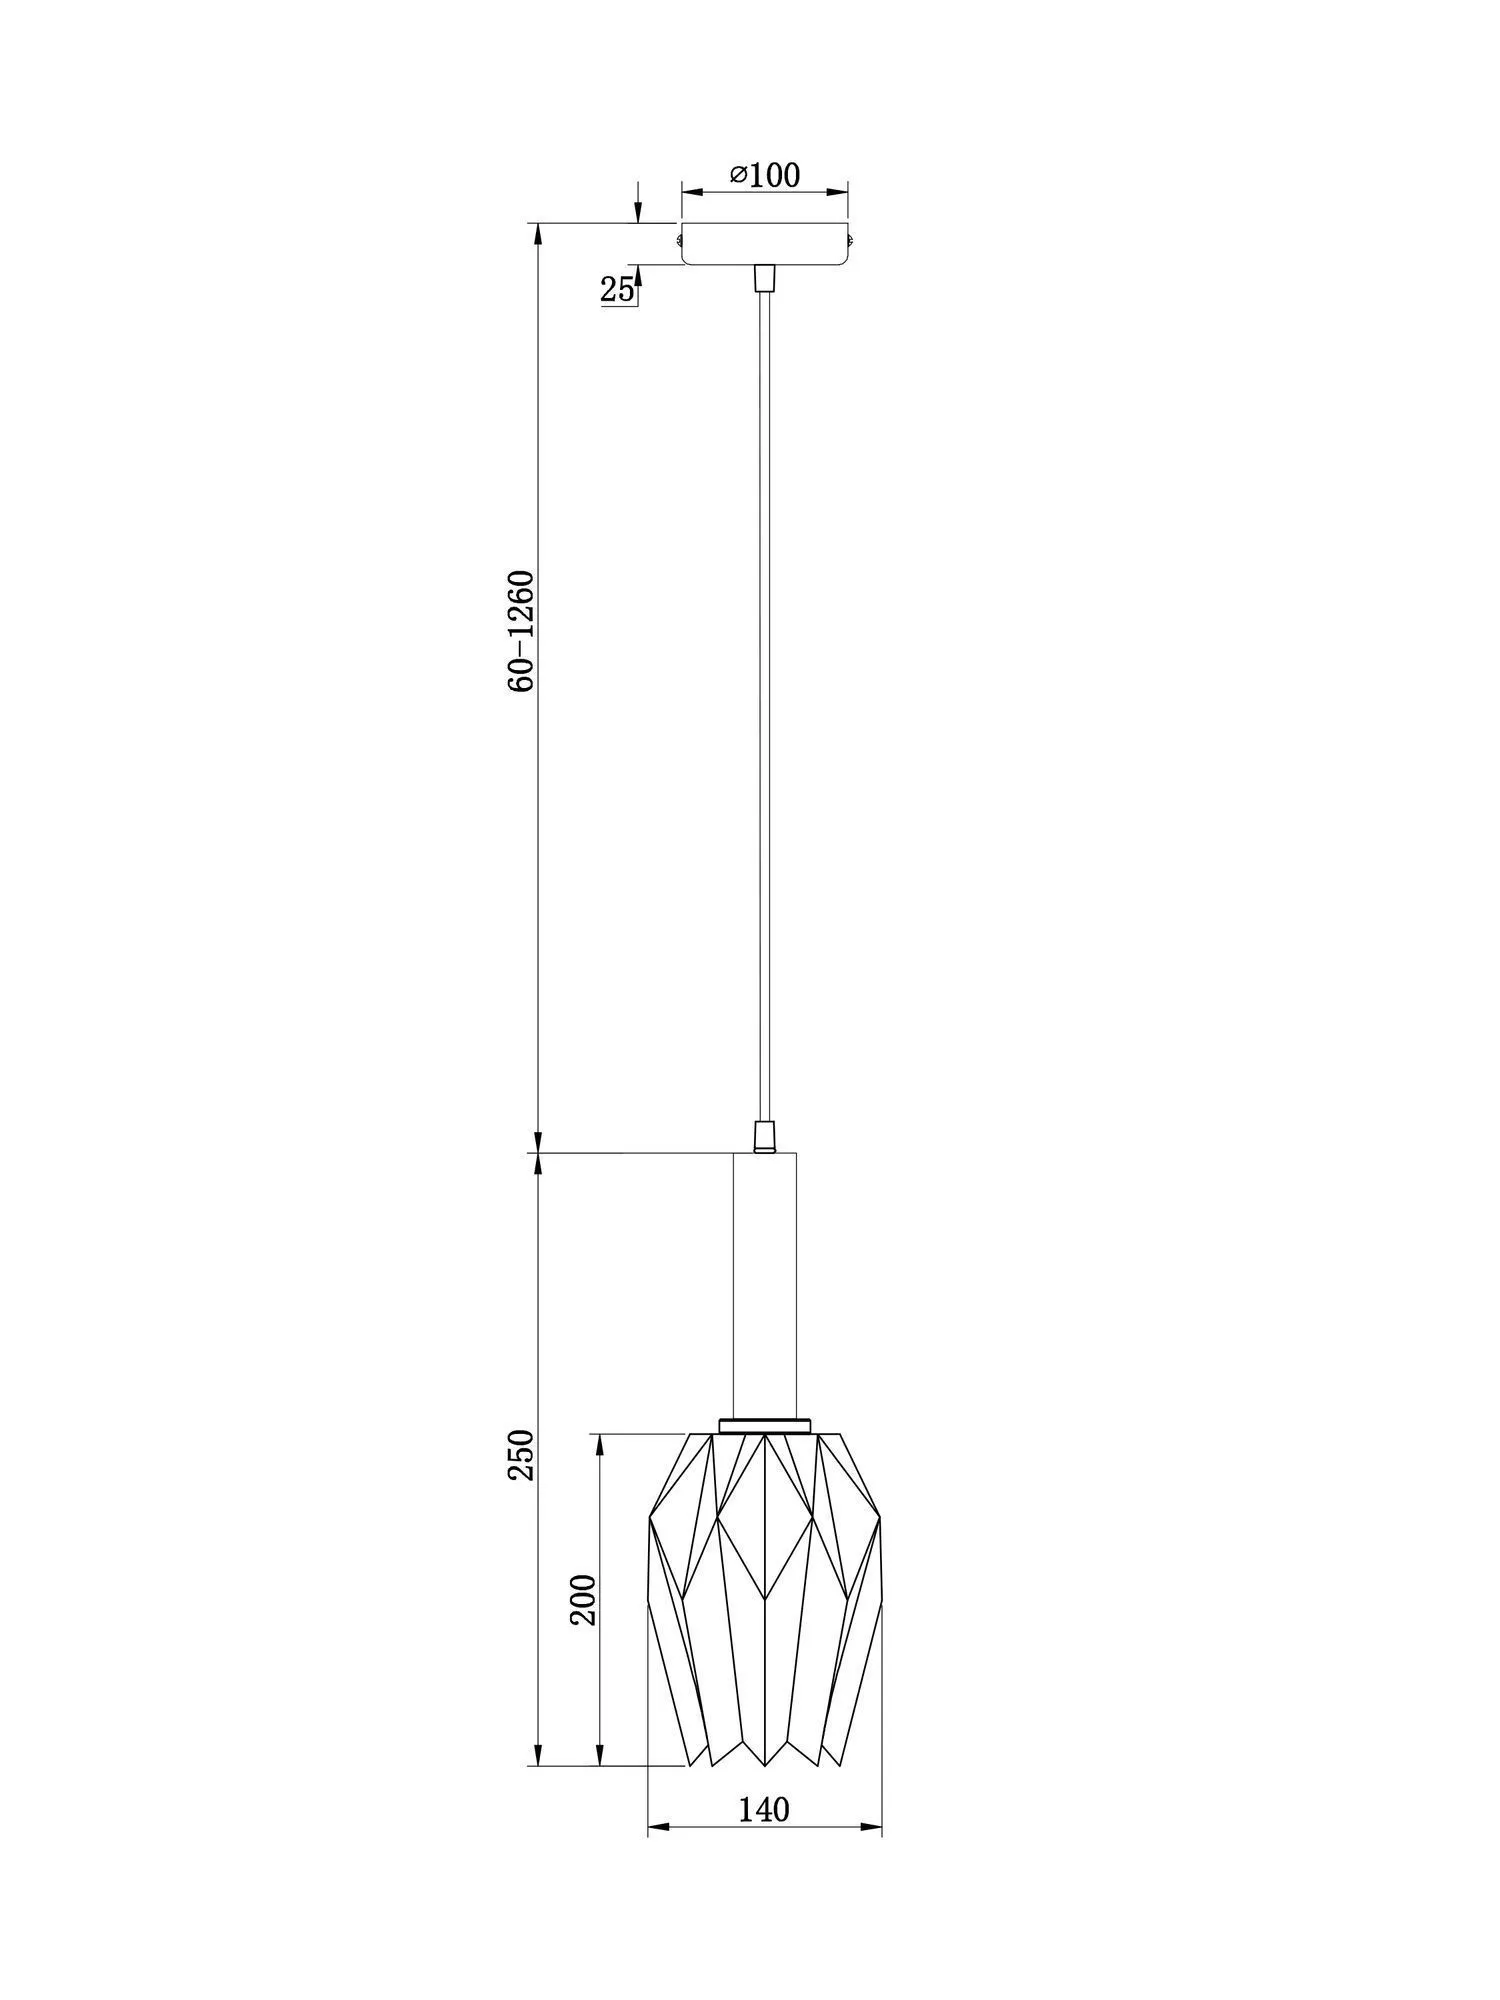 Подвесной светильник Freya Delta FR9001PL-01B